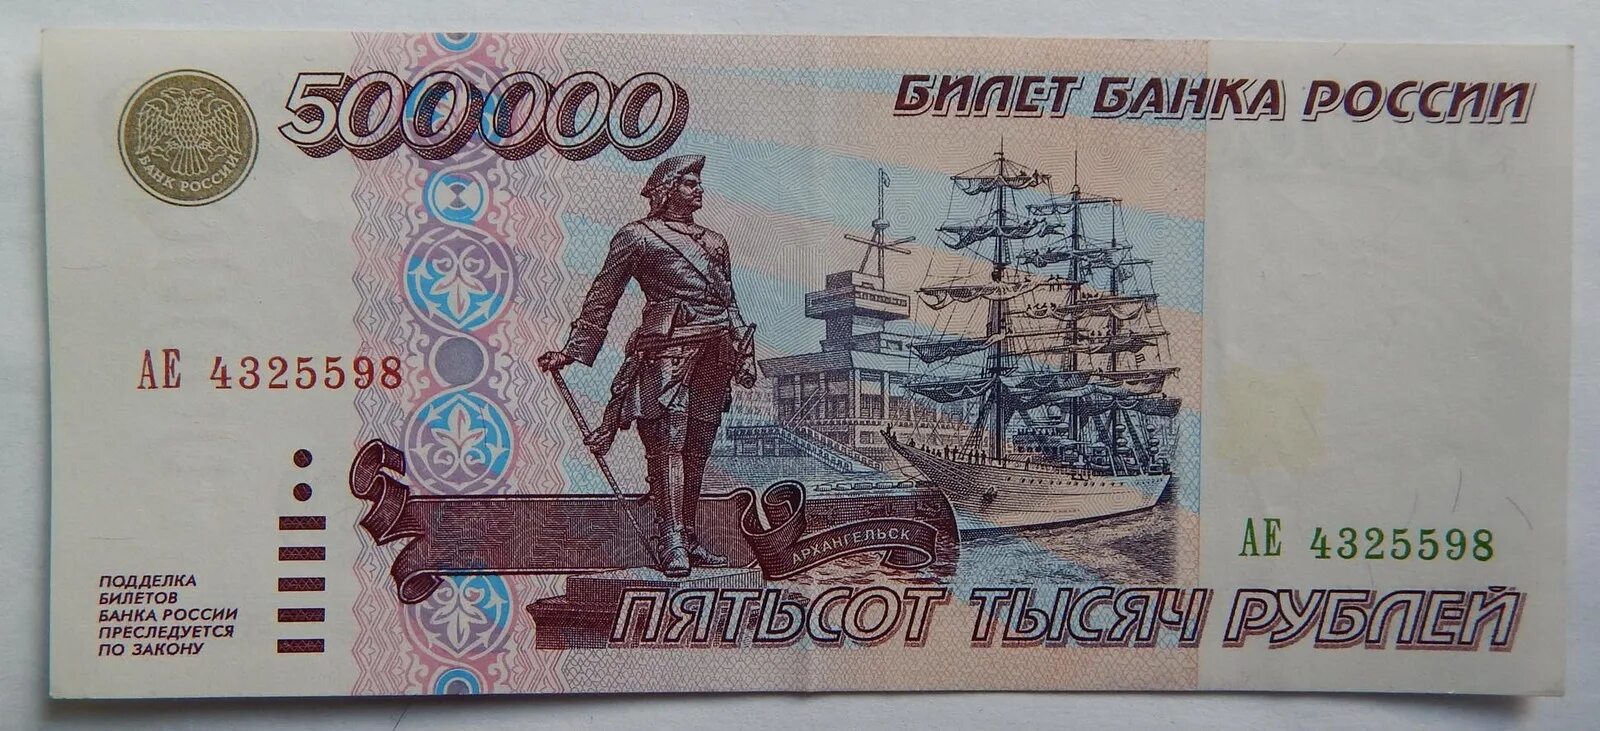 Купюра 500 000 рублей 1995 года. Банкнота 500000 рублей 1995. 500 000 Рублей 1995 года. Банкнота 500000 рублей 1995 года.